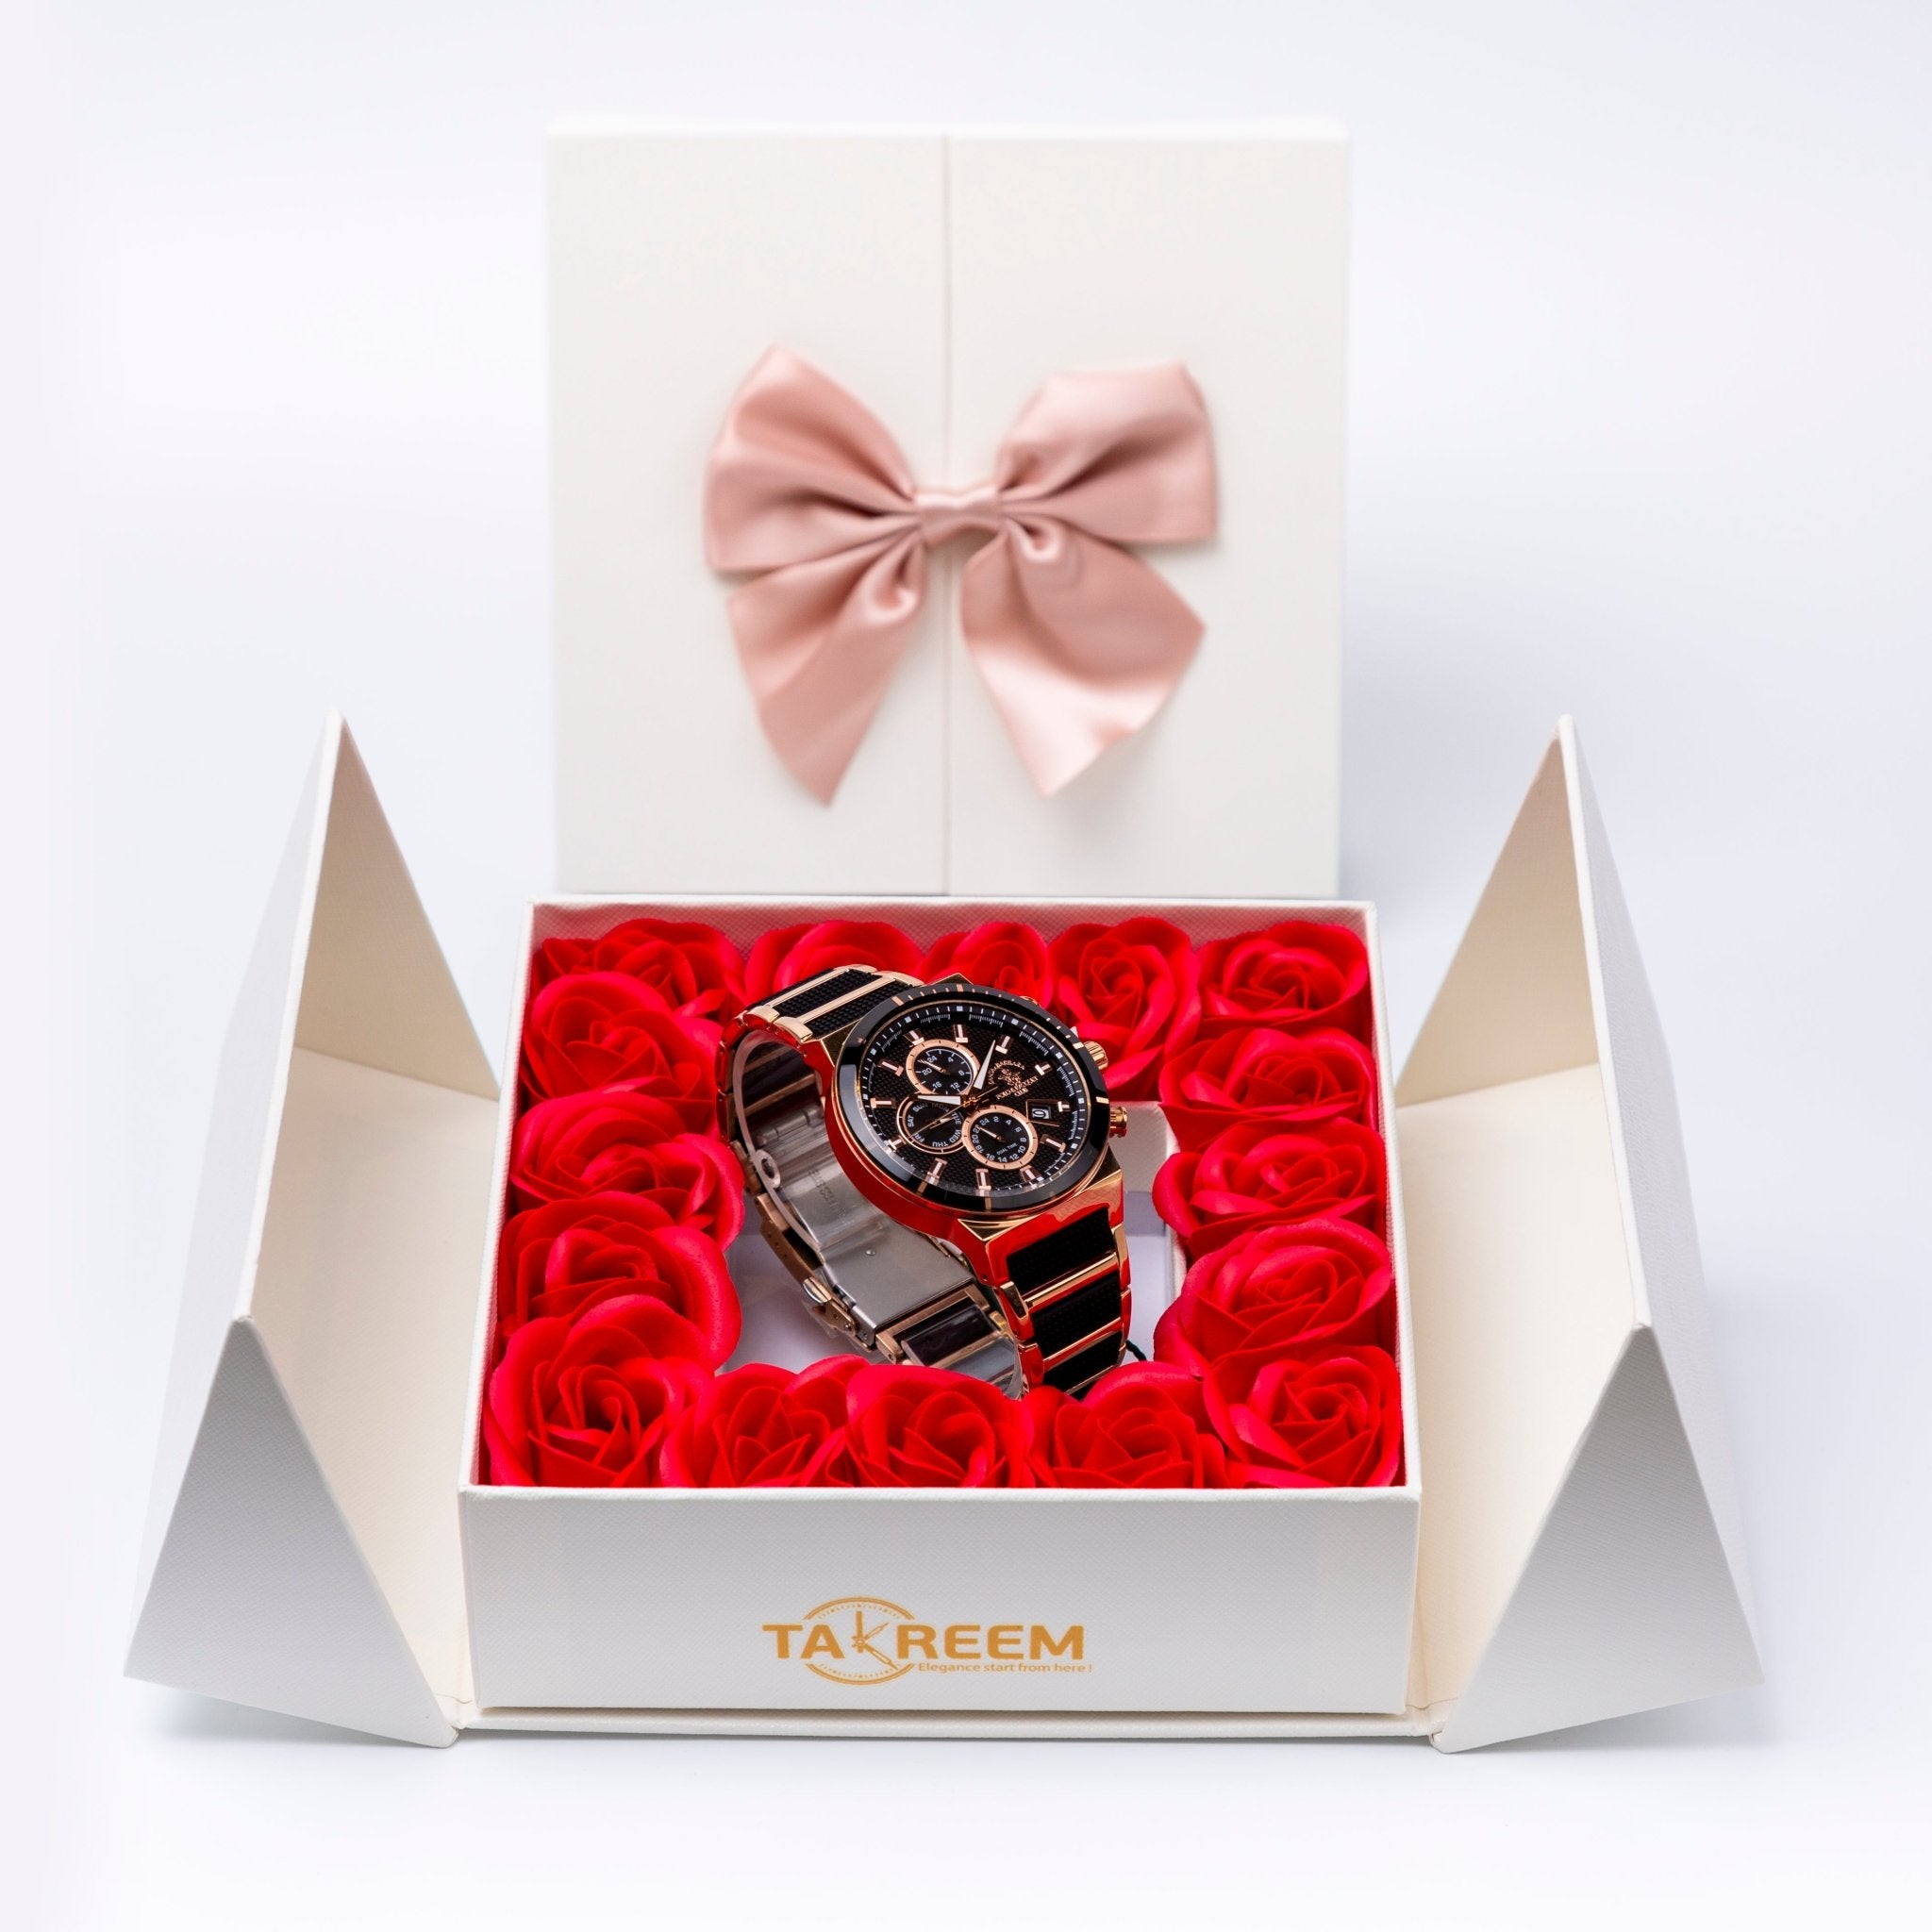 Flower Box - Gift For Men 23 - #shoFlower Box - Gift For Men 23p_name#Flower Box - Gift For Men 23Gift Boxes & TinsTakreemTakreem.joMenWatchFlower Box - Gift For Men 23 - Takreem.jo